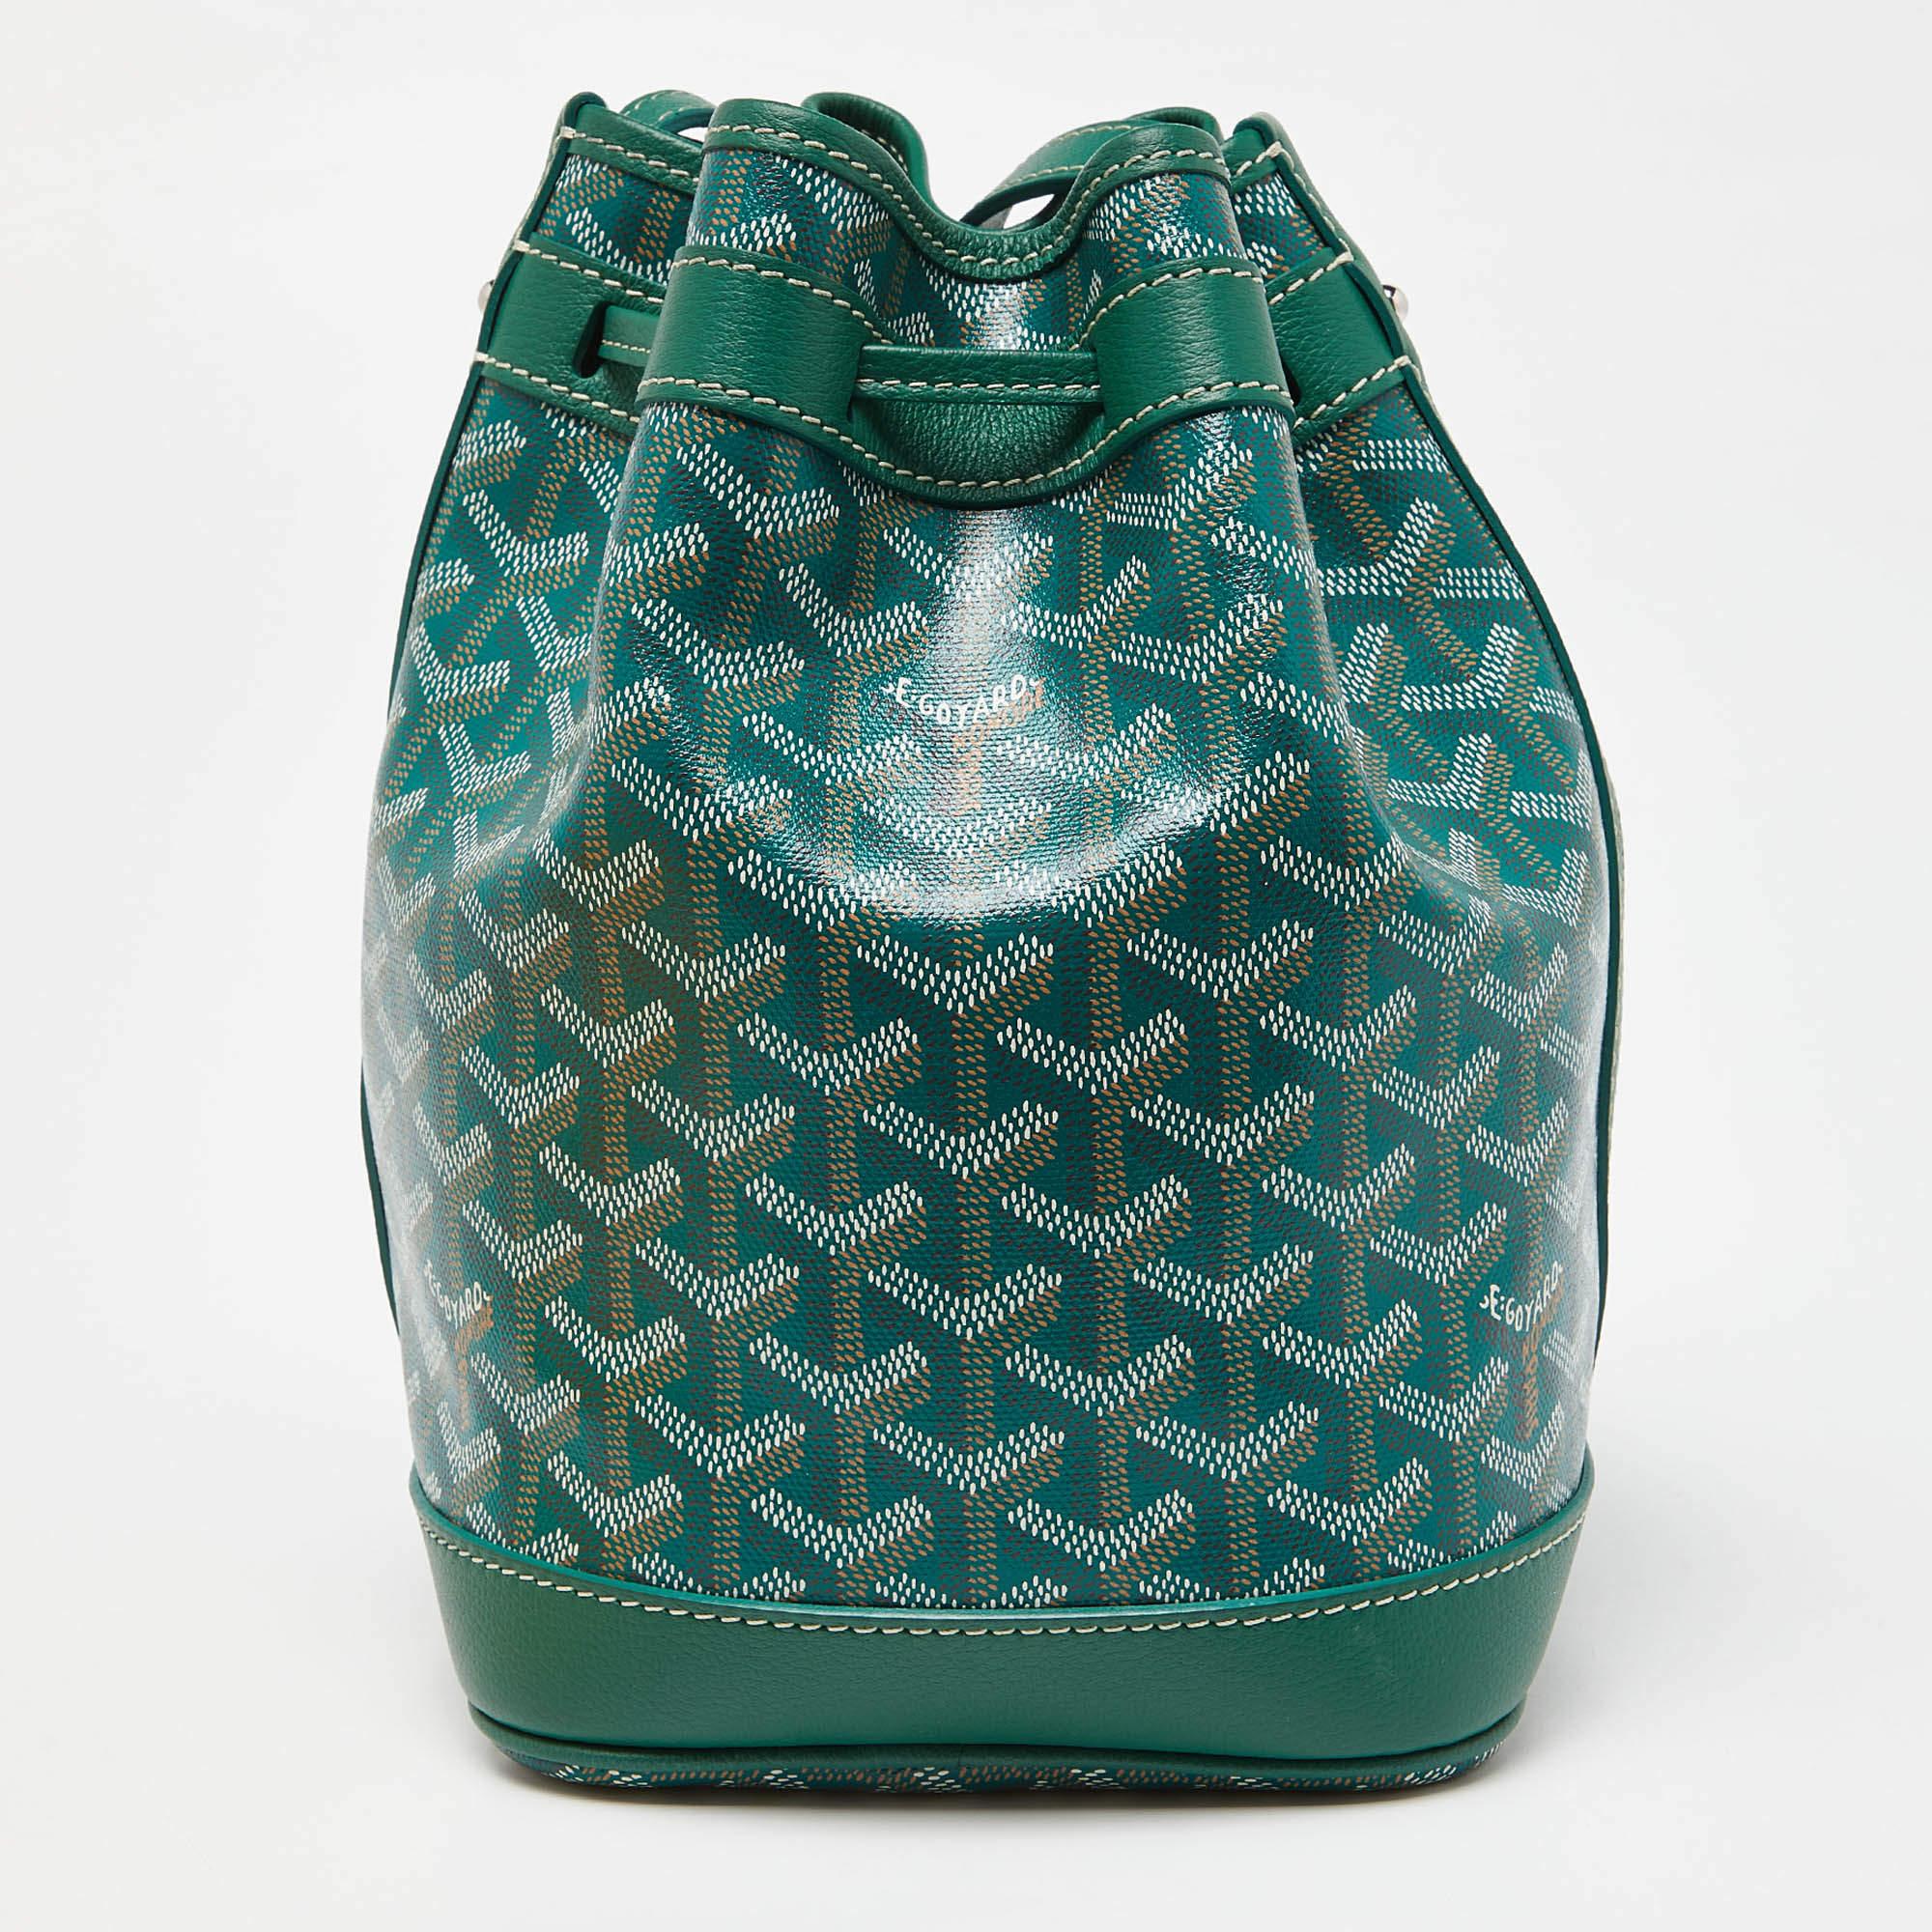 Le sac seau Goyard Flot est un accessoire élégant et compact conçu pour les personnes soucieuses de la mode. Conçu à partir d'une combinaison de toile enduite et de cuir, ce sac arbore l'emblématique imprimé Goyardine en vert, offrant une touche de